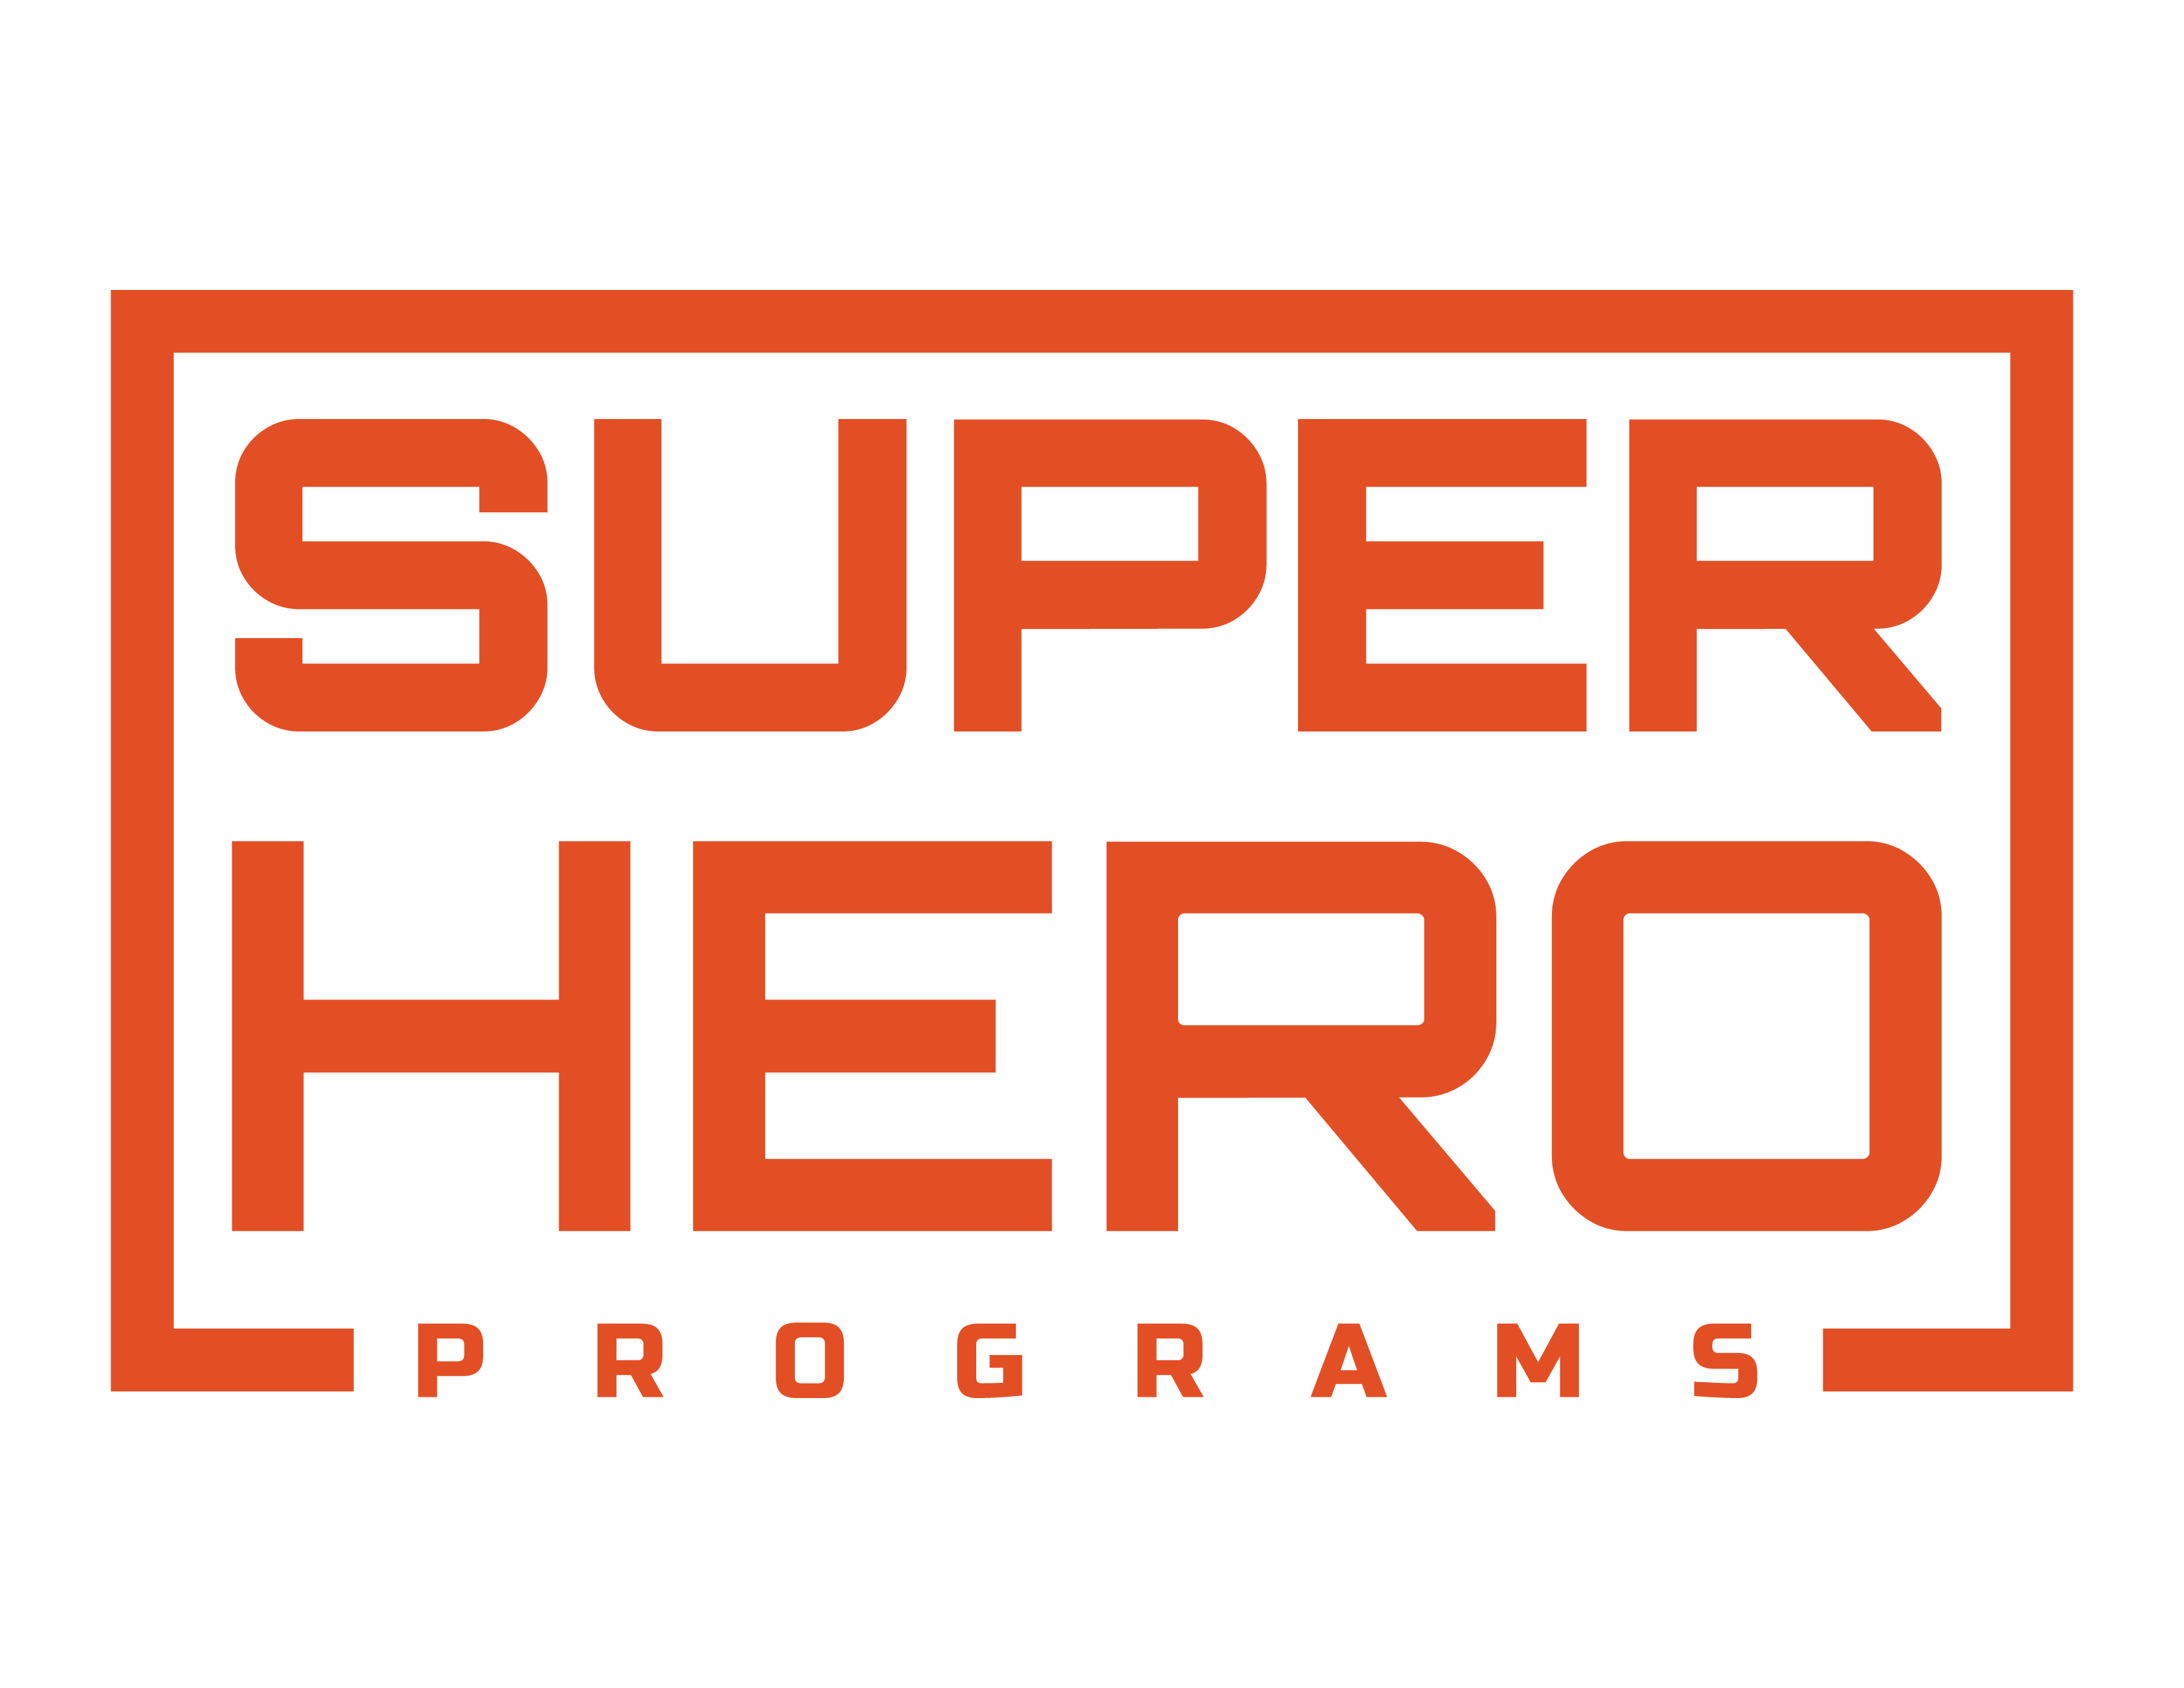 Superhero Programs